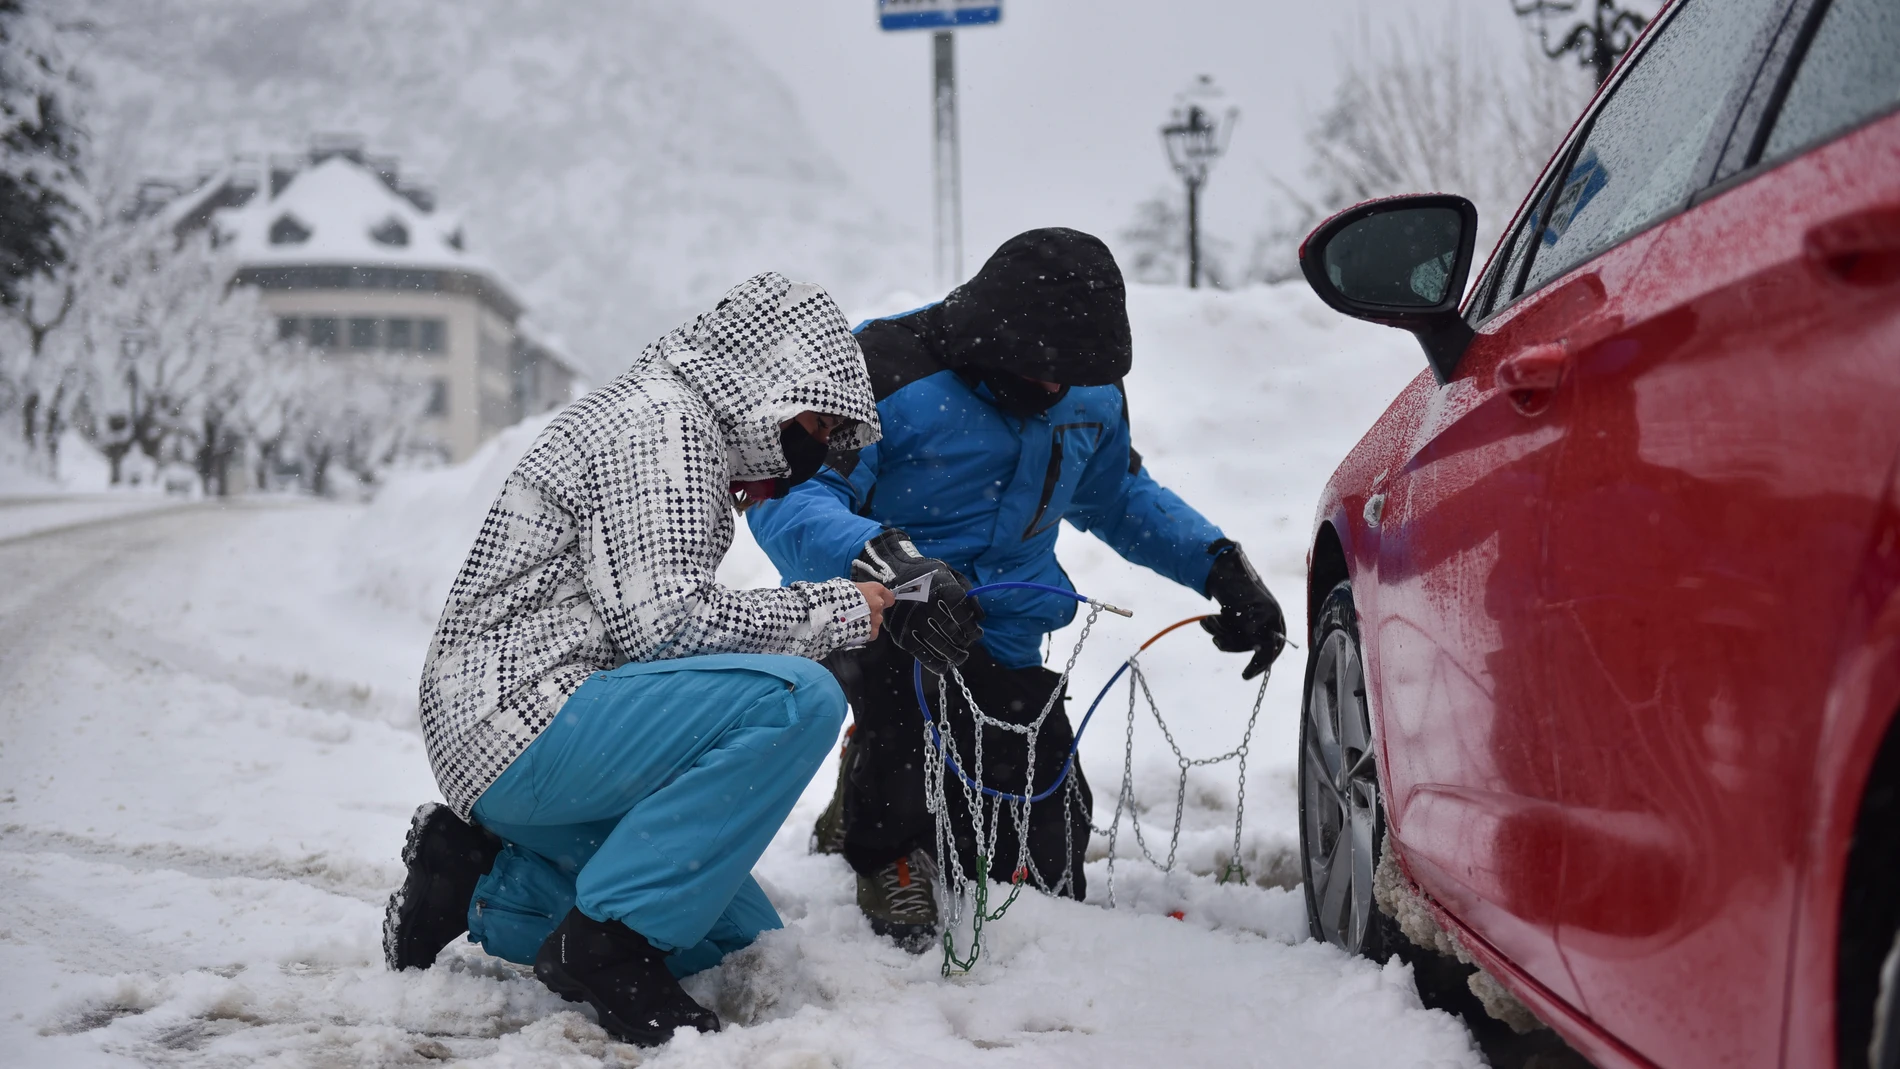 Cadenas para el coche o neumáticos de invierno: todo lo que hay que saber  para conducir con seguridad sobre nieve o hielo